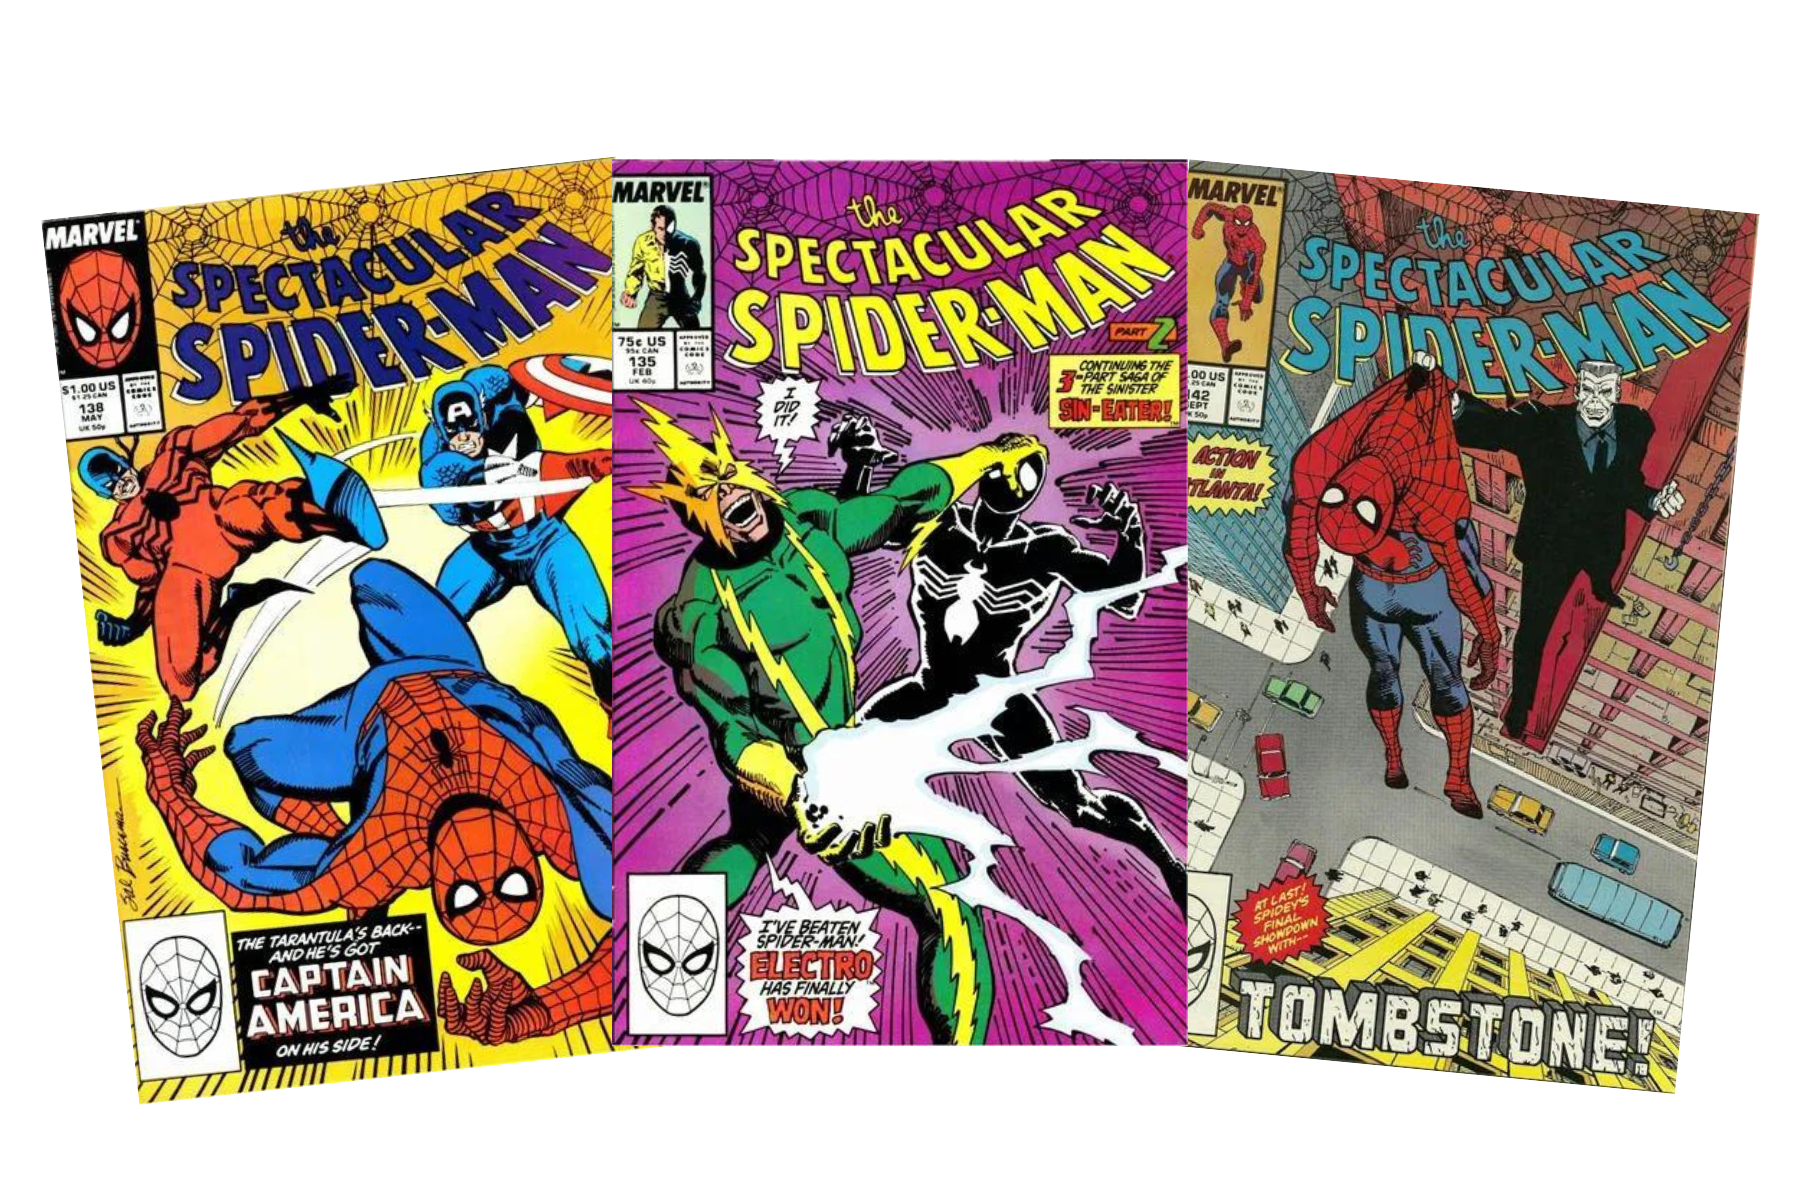 Spectacular Spider-Man #138, Spectacular Spider-Man #135, Spectacular Spider-Man #142